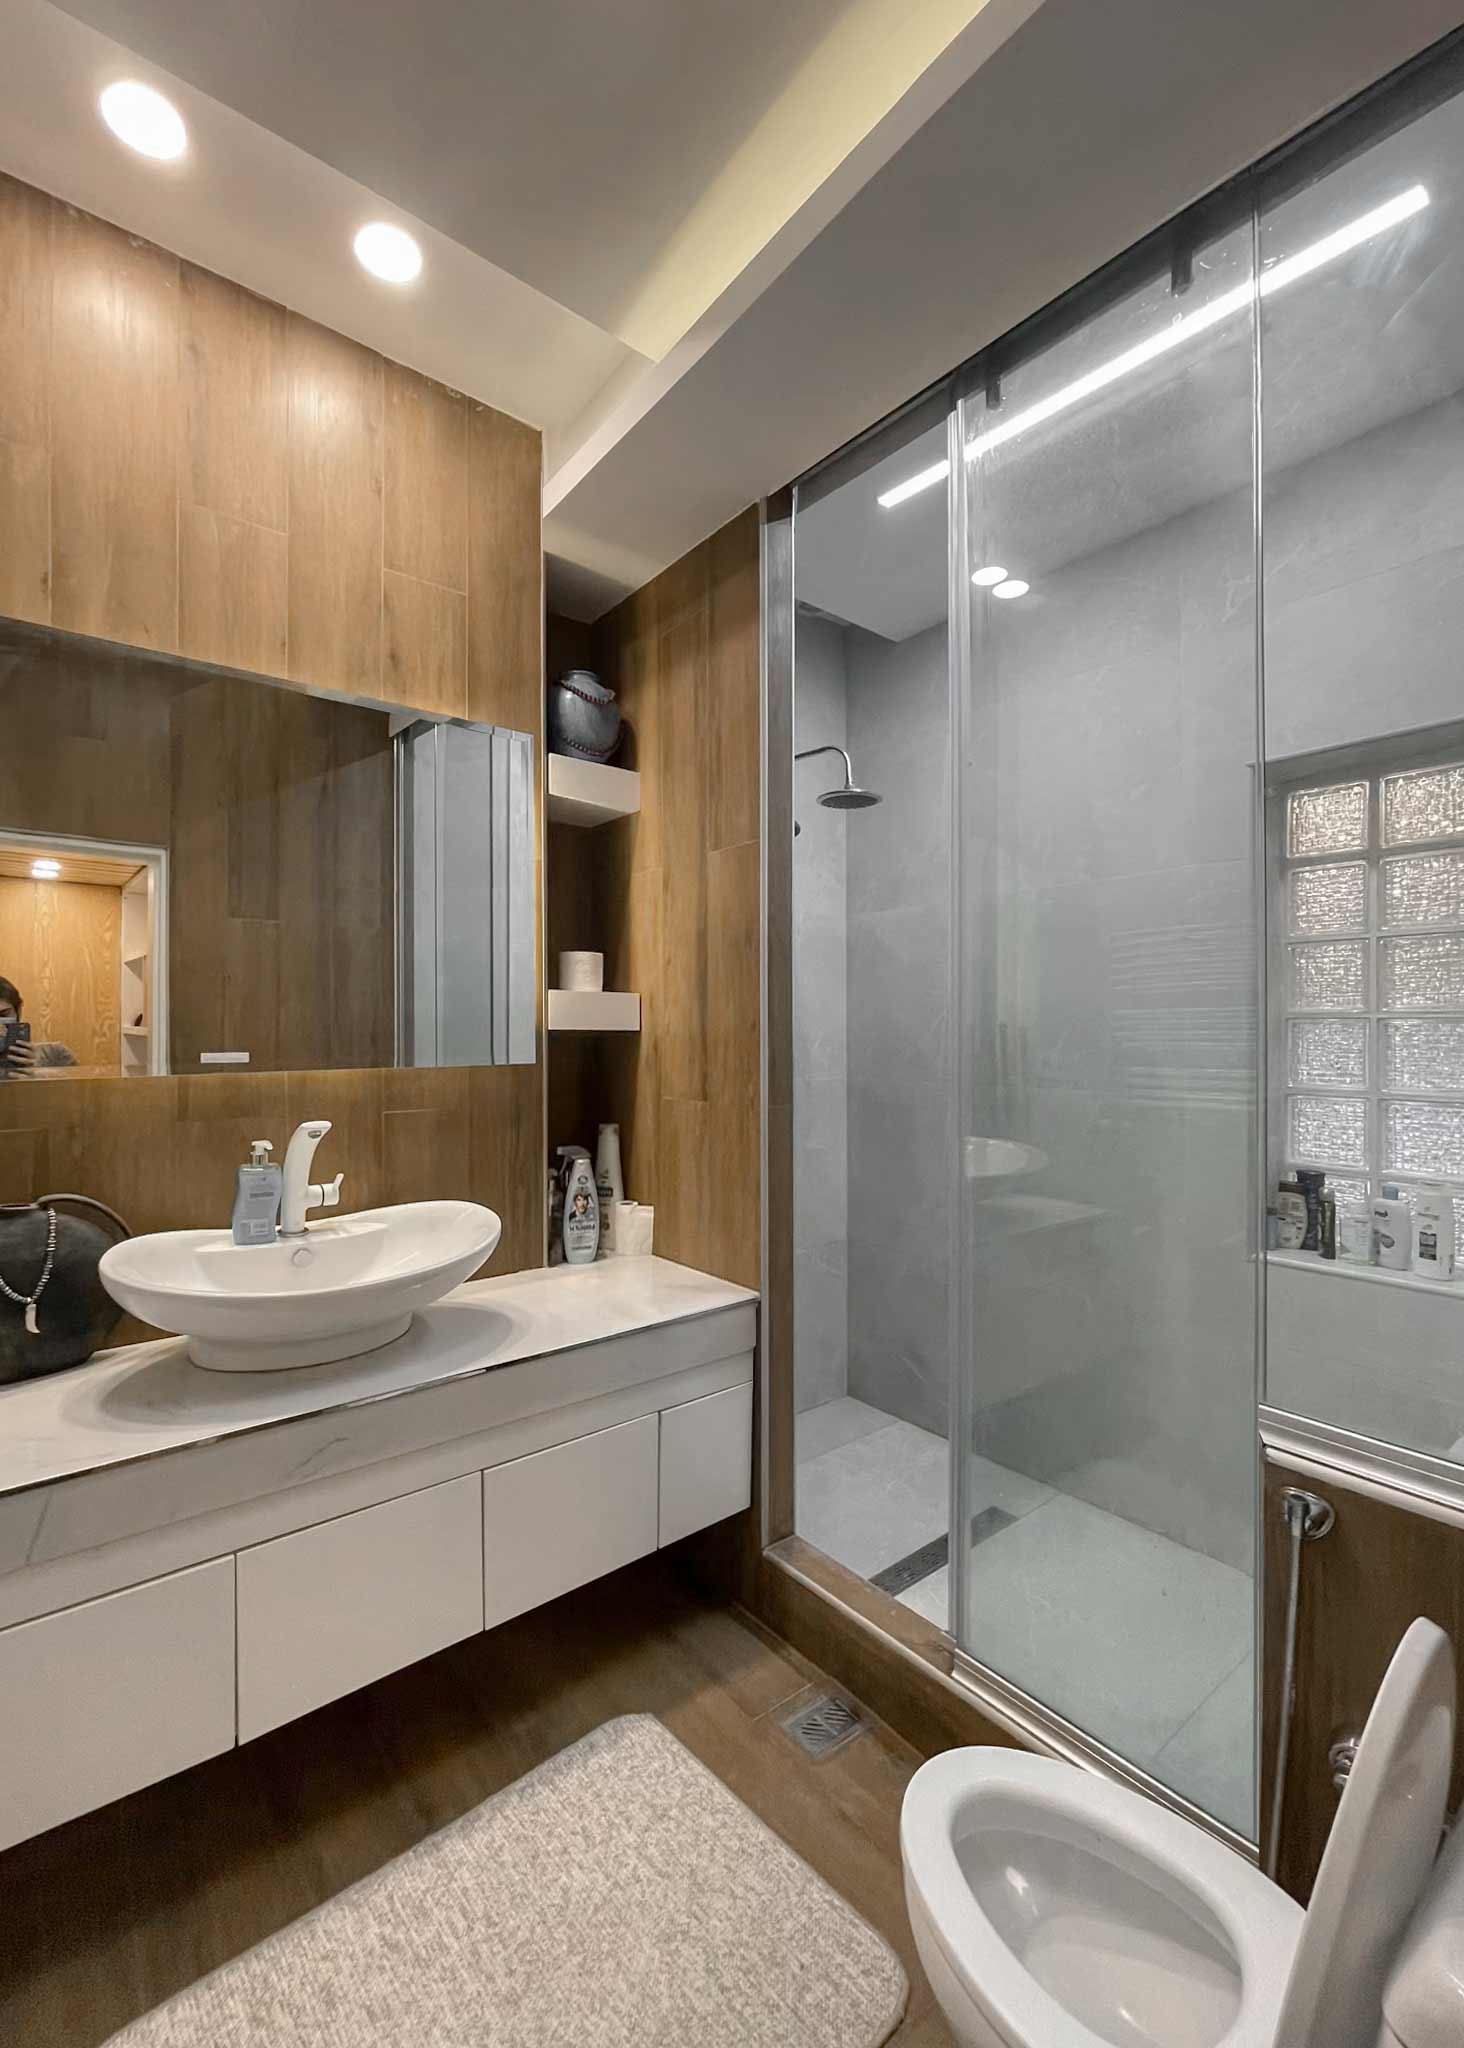 wc and bath , kadoos interior design